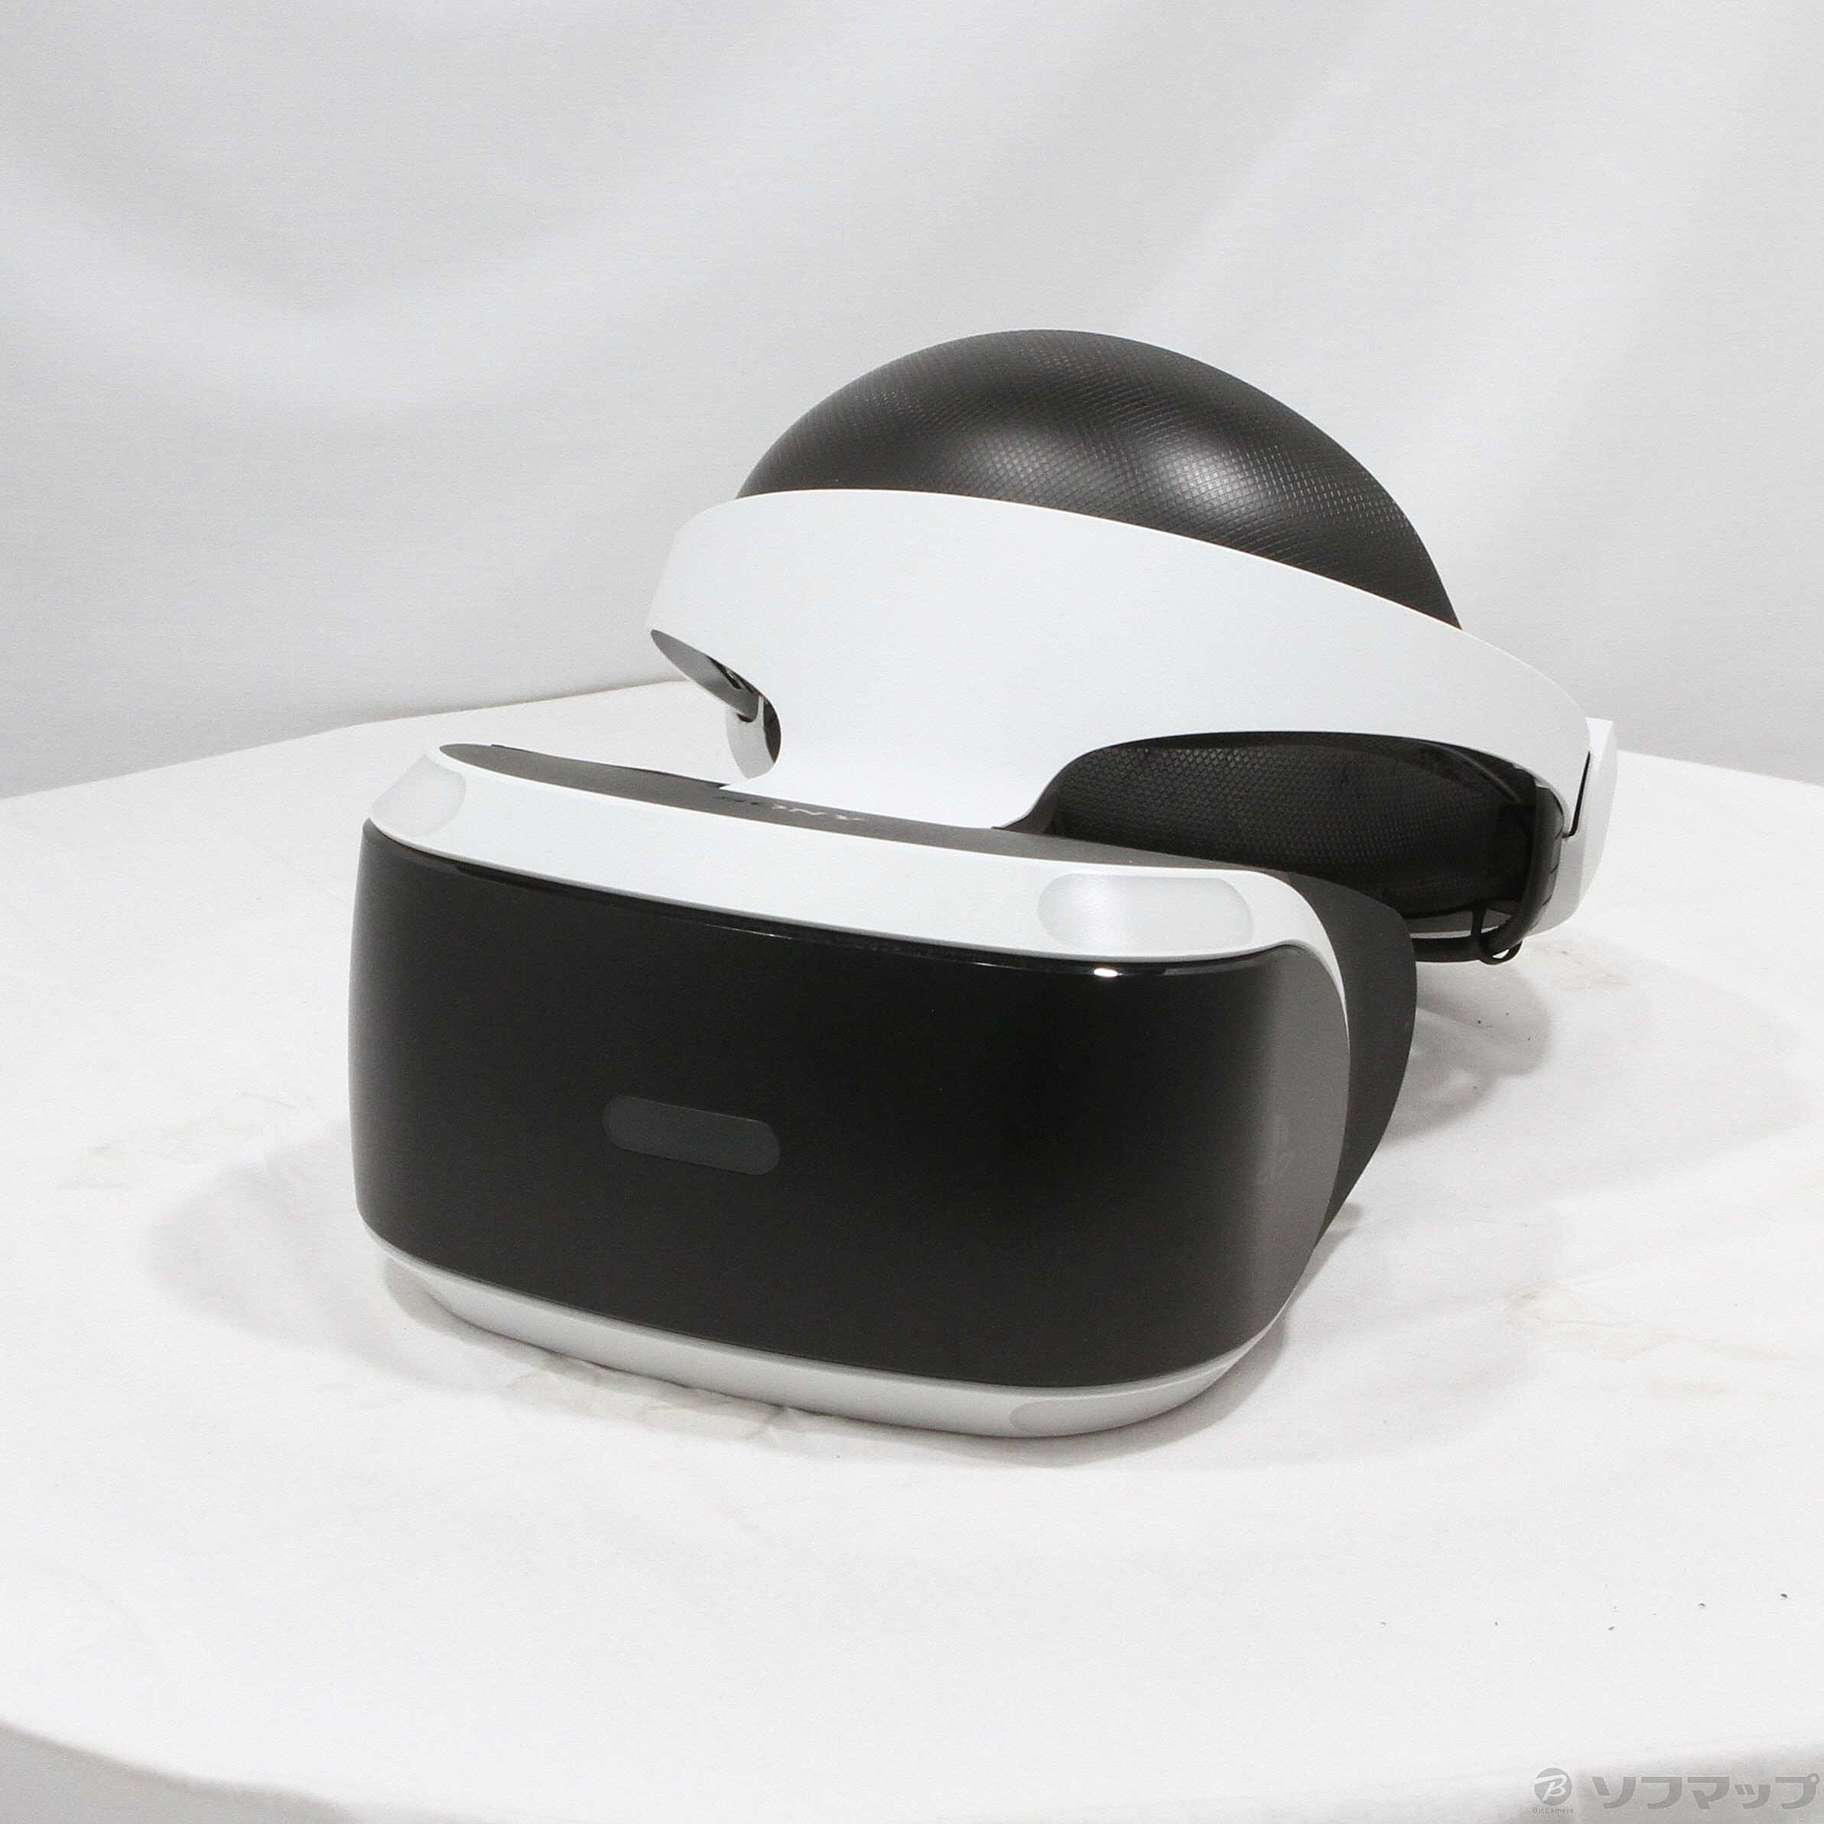 セール対象品 PlayStation VR PlayStation Camera 同梱版 CUHJ-16001